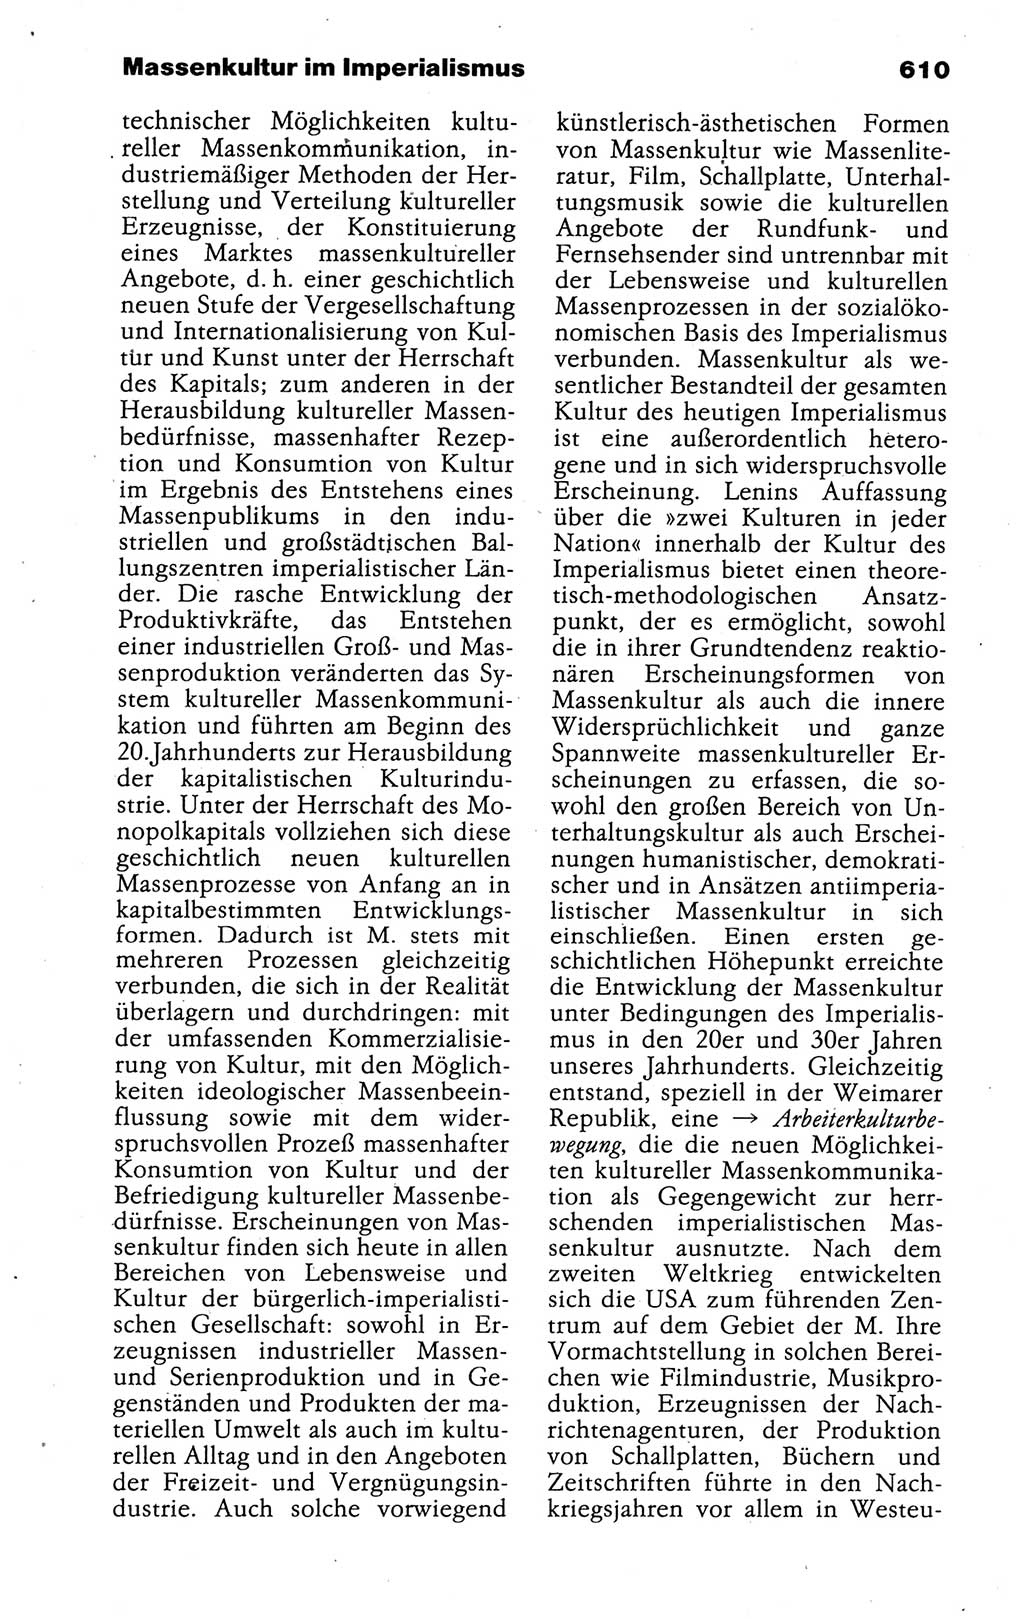 Kleines politisches Wörterbuch [Deutsche Demokratische Republik (DDR)] 1988, Seite 610 (Kl. pol. Wb. DDR 1988, S. 610)